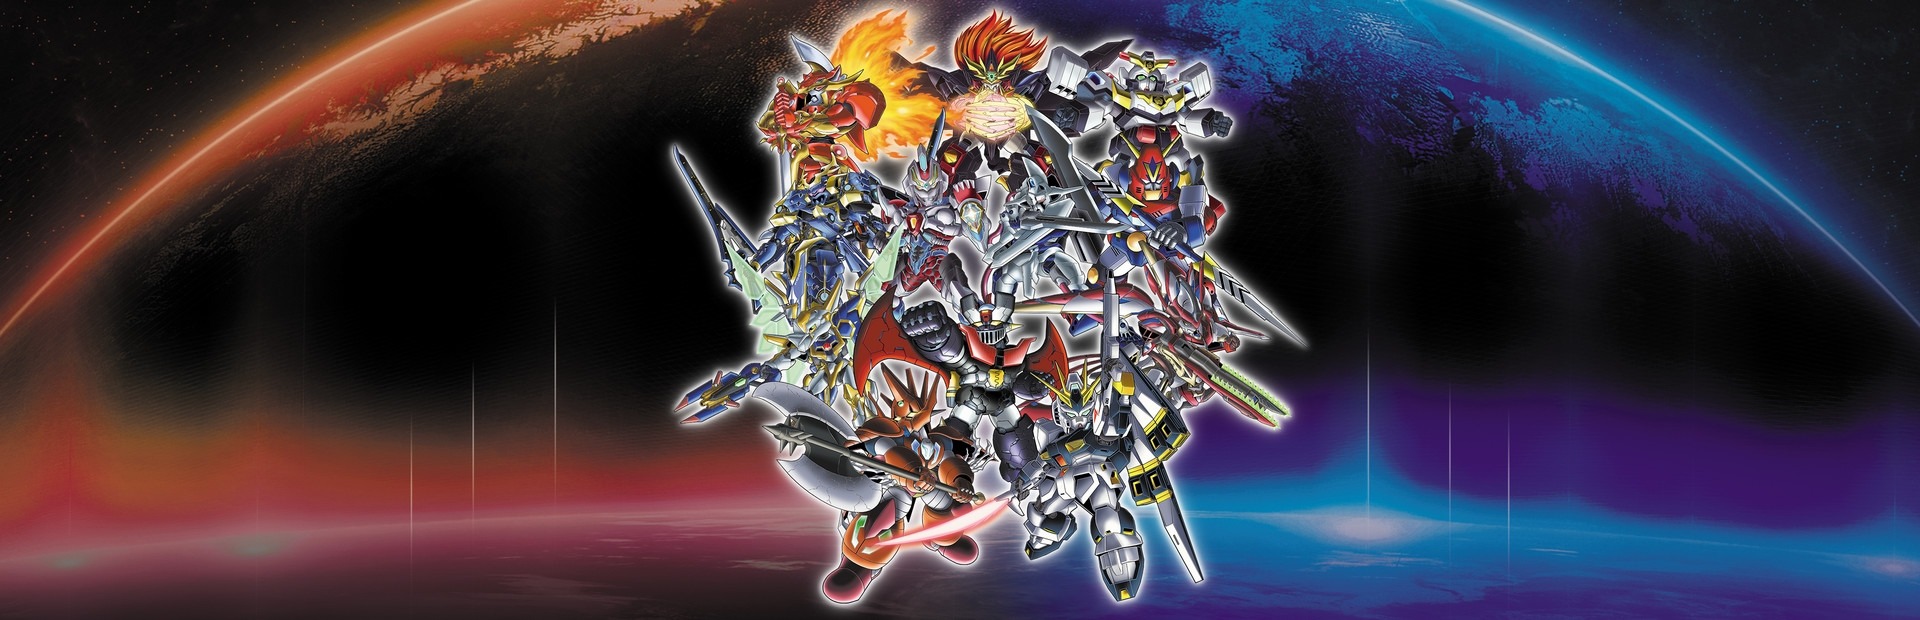 Super Robot Wars 30 Digital Deluxe Edition